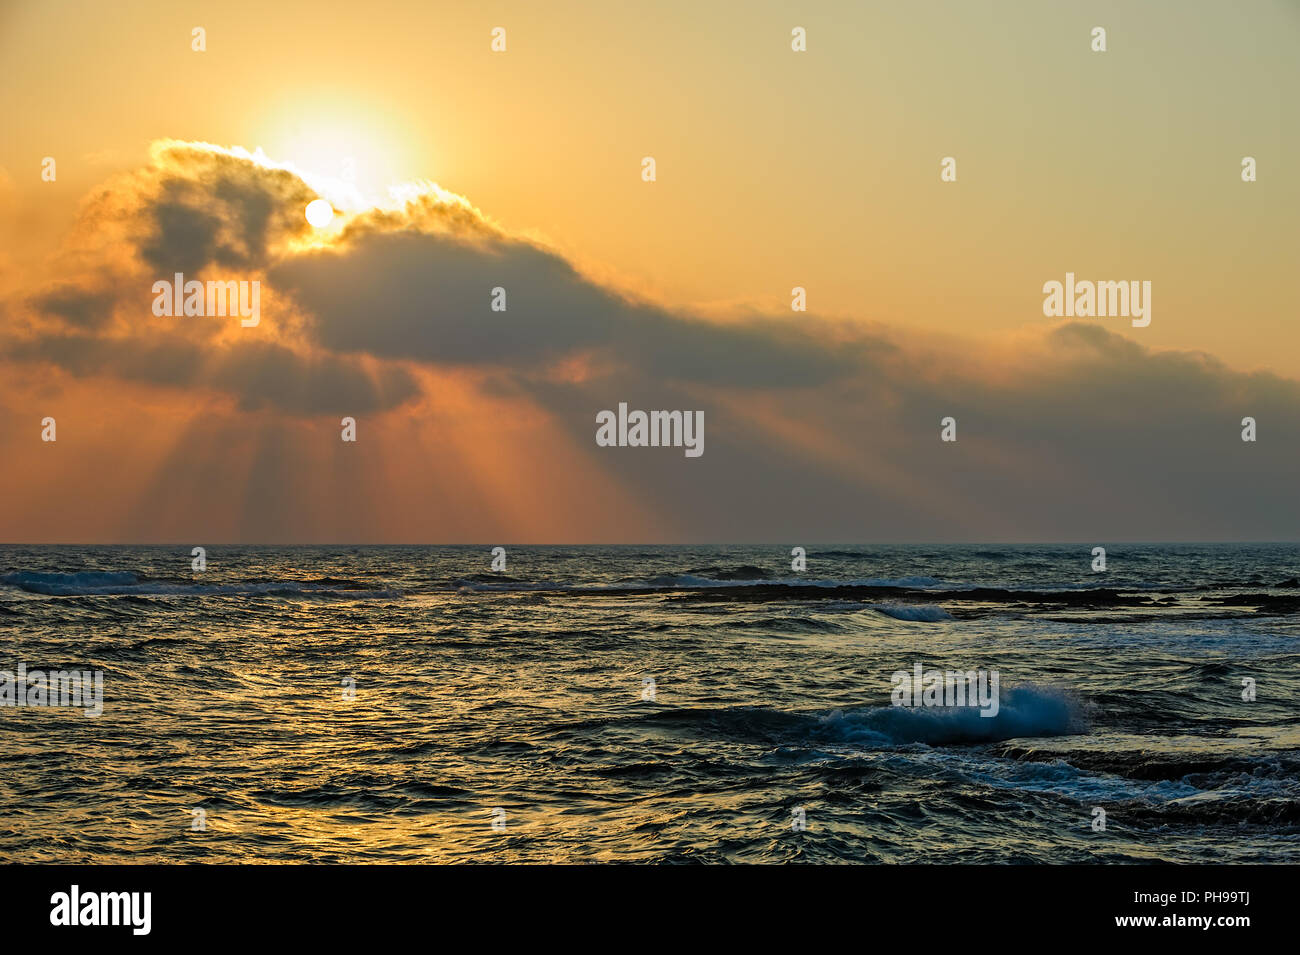 Sunset over sea Stock Photo